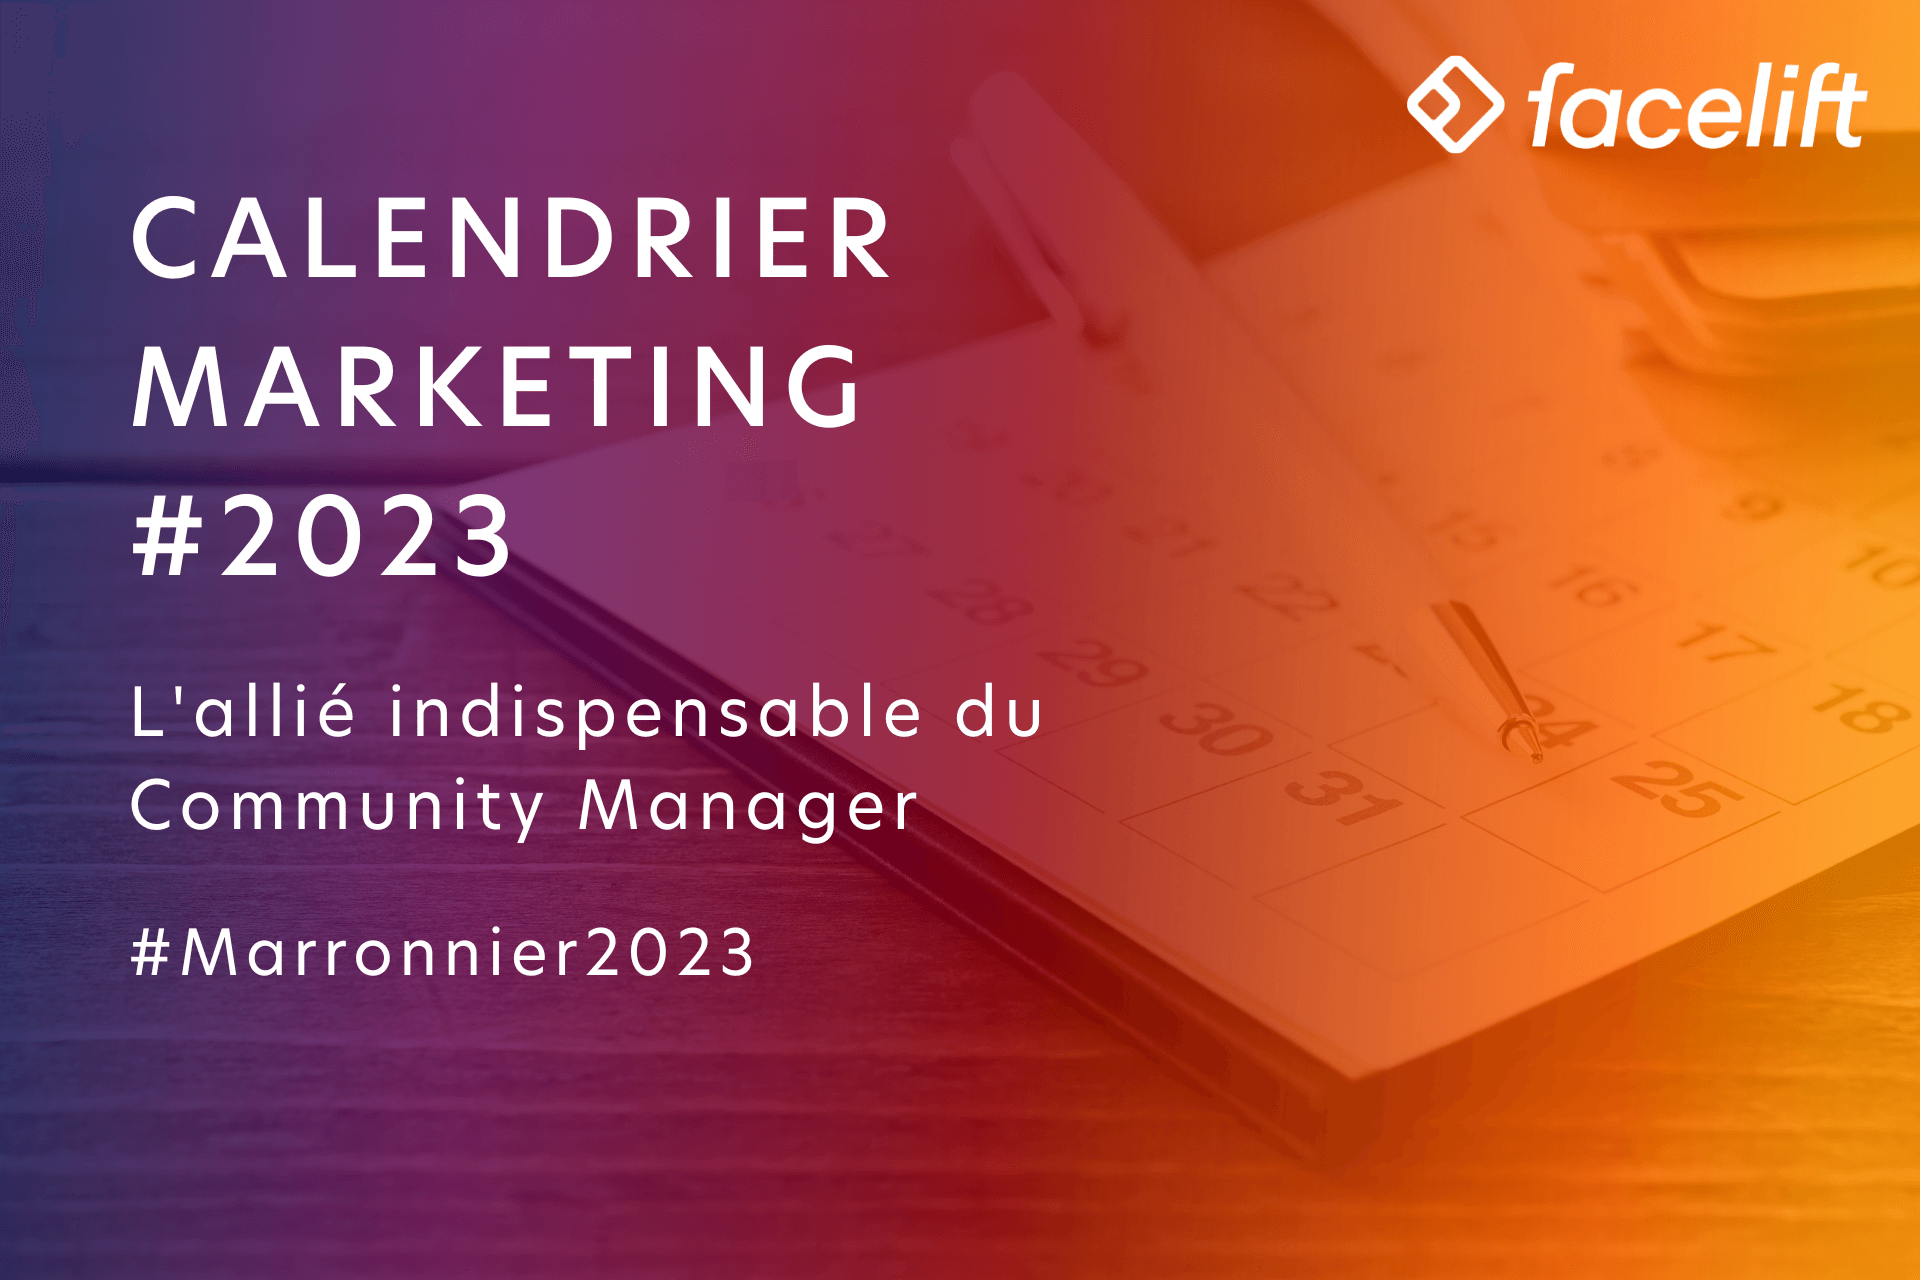 Les Marronniers Marketing 2023 : L'outil du Community Manager